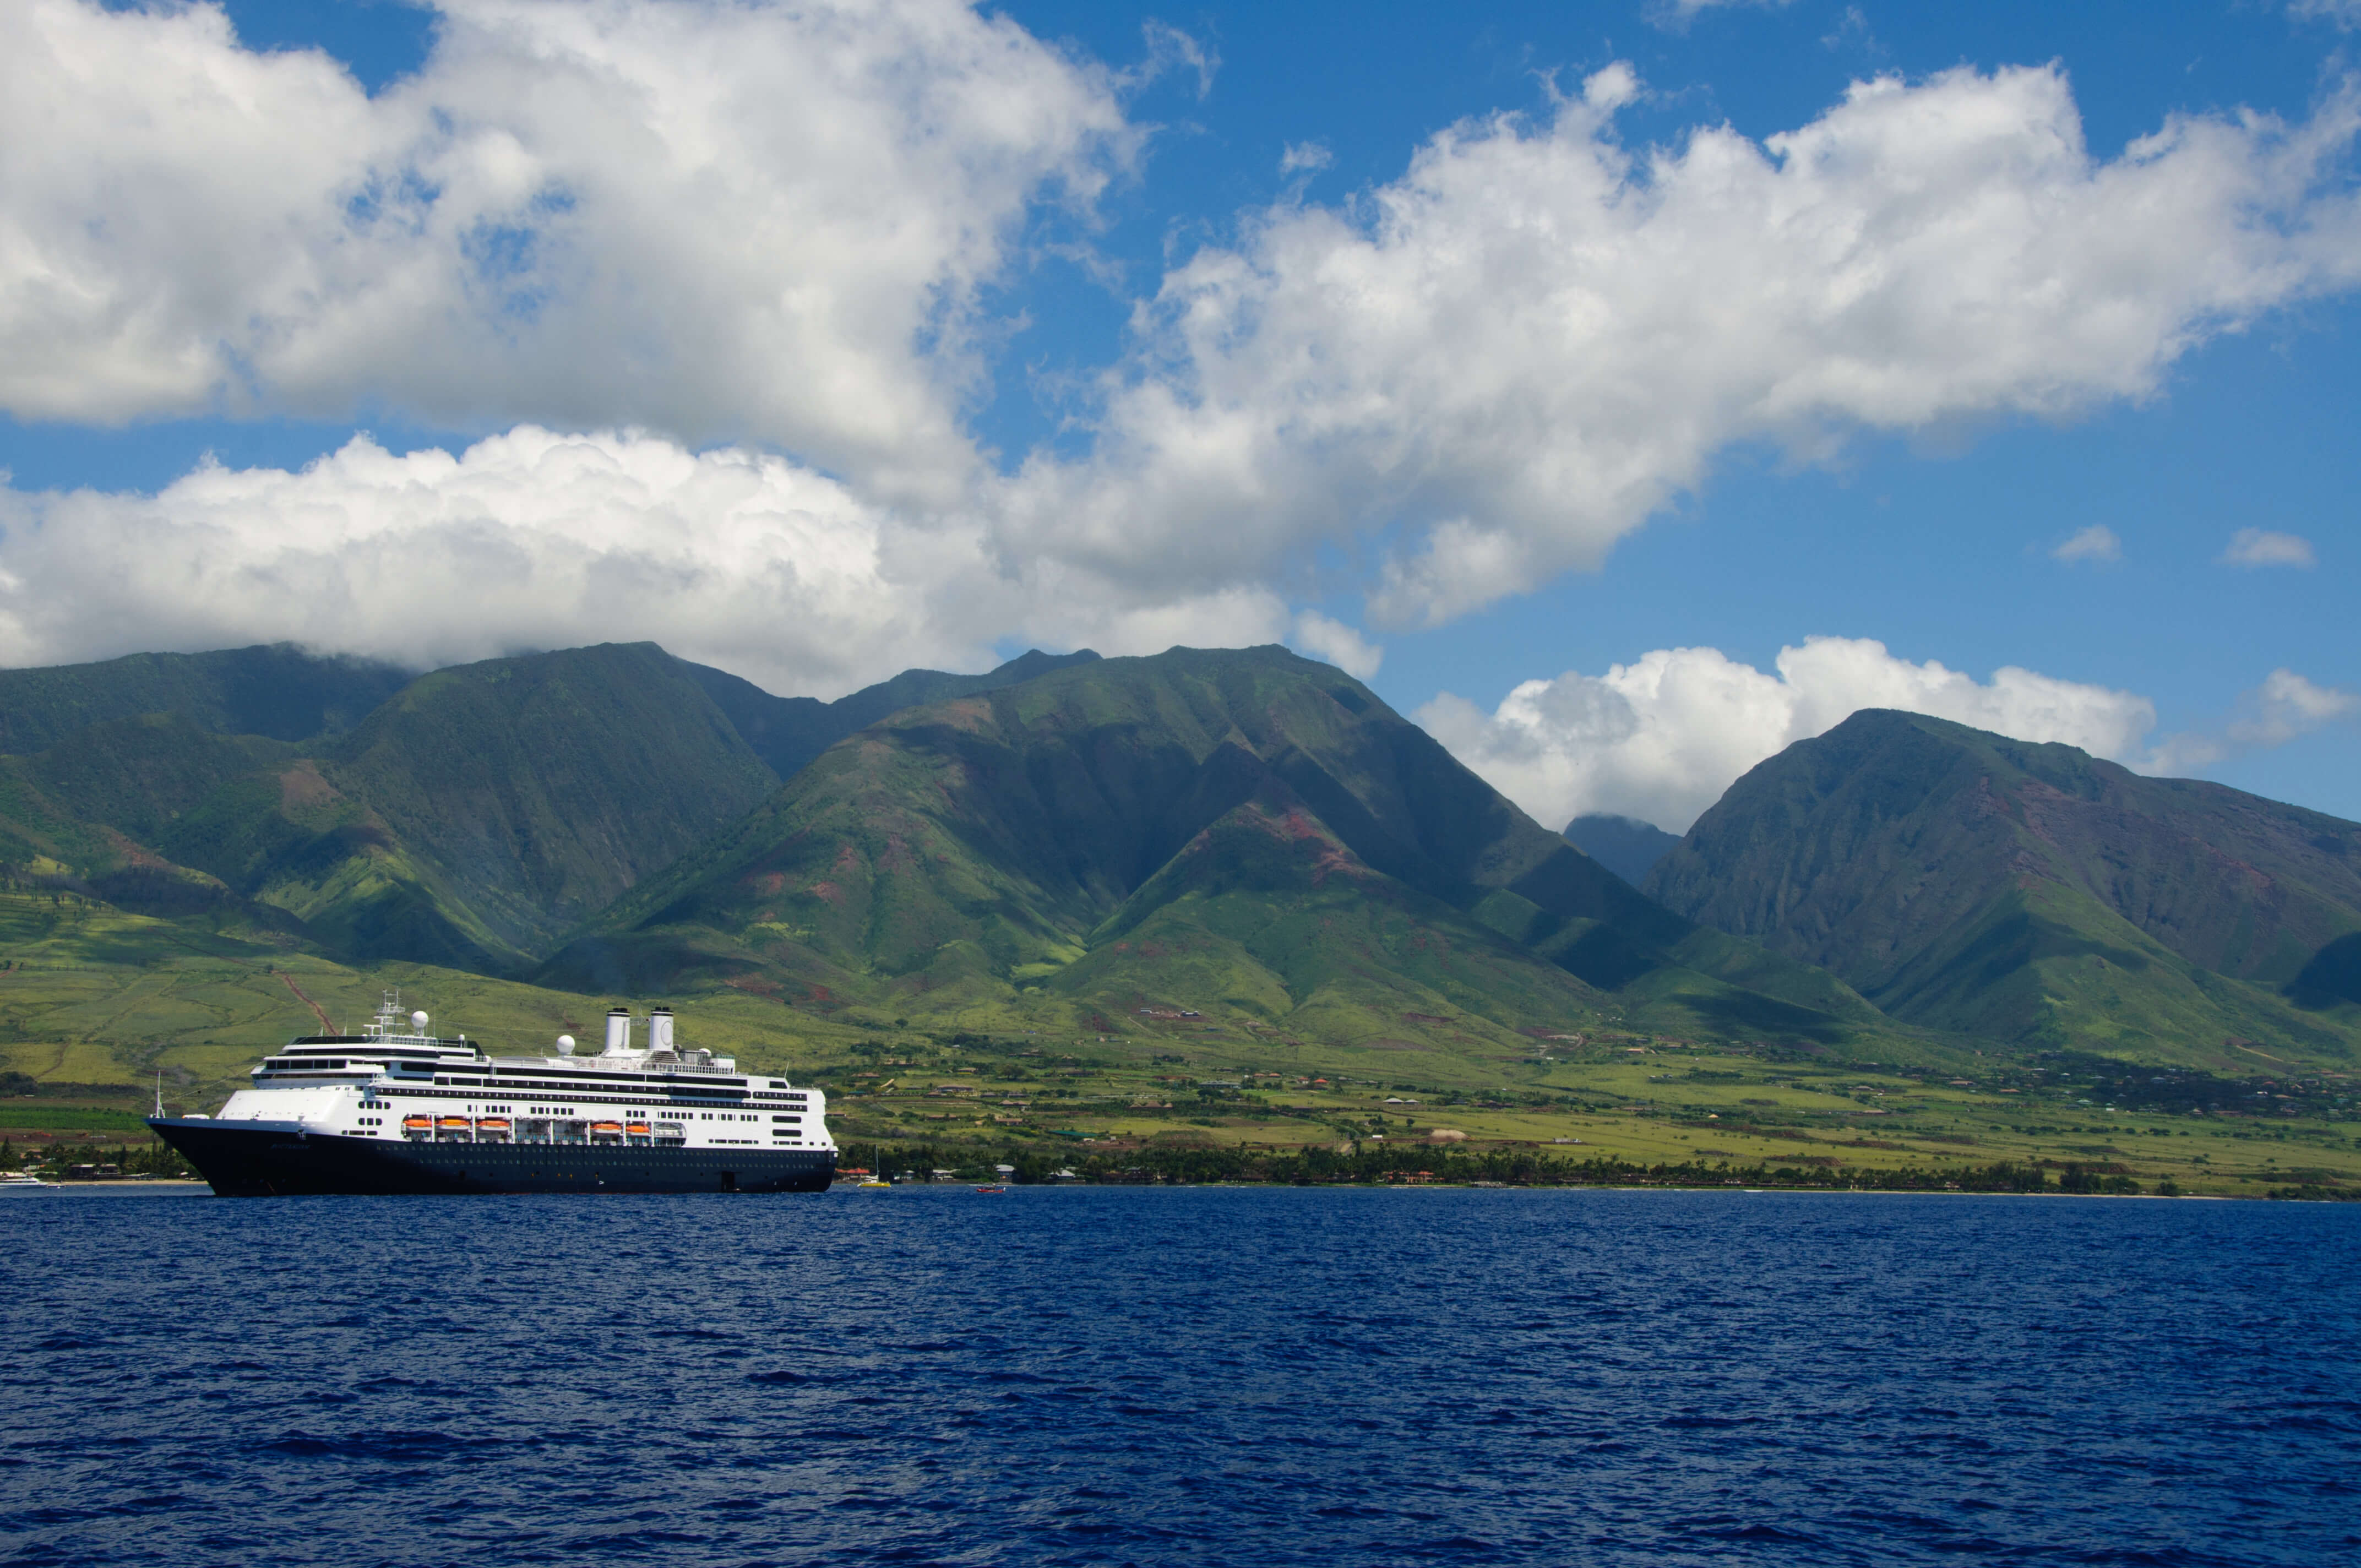 A cruise ship in Hawaii